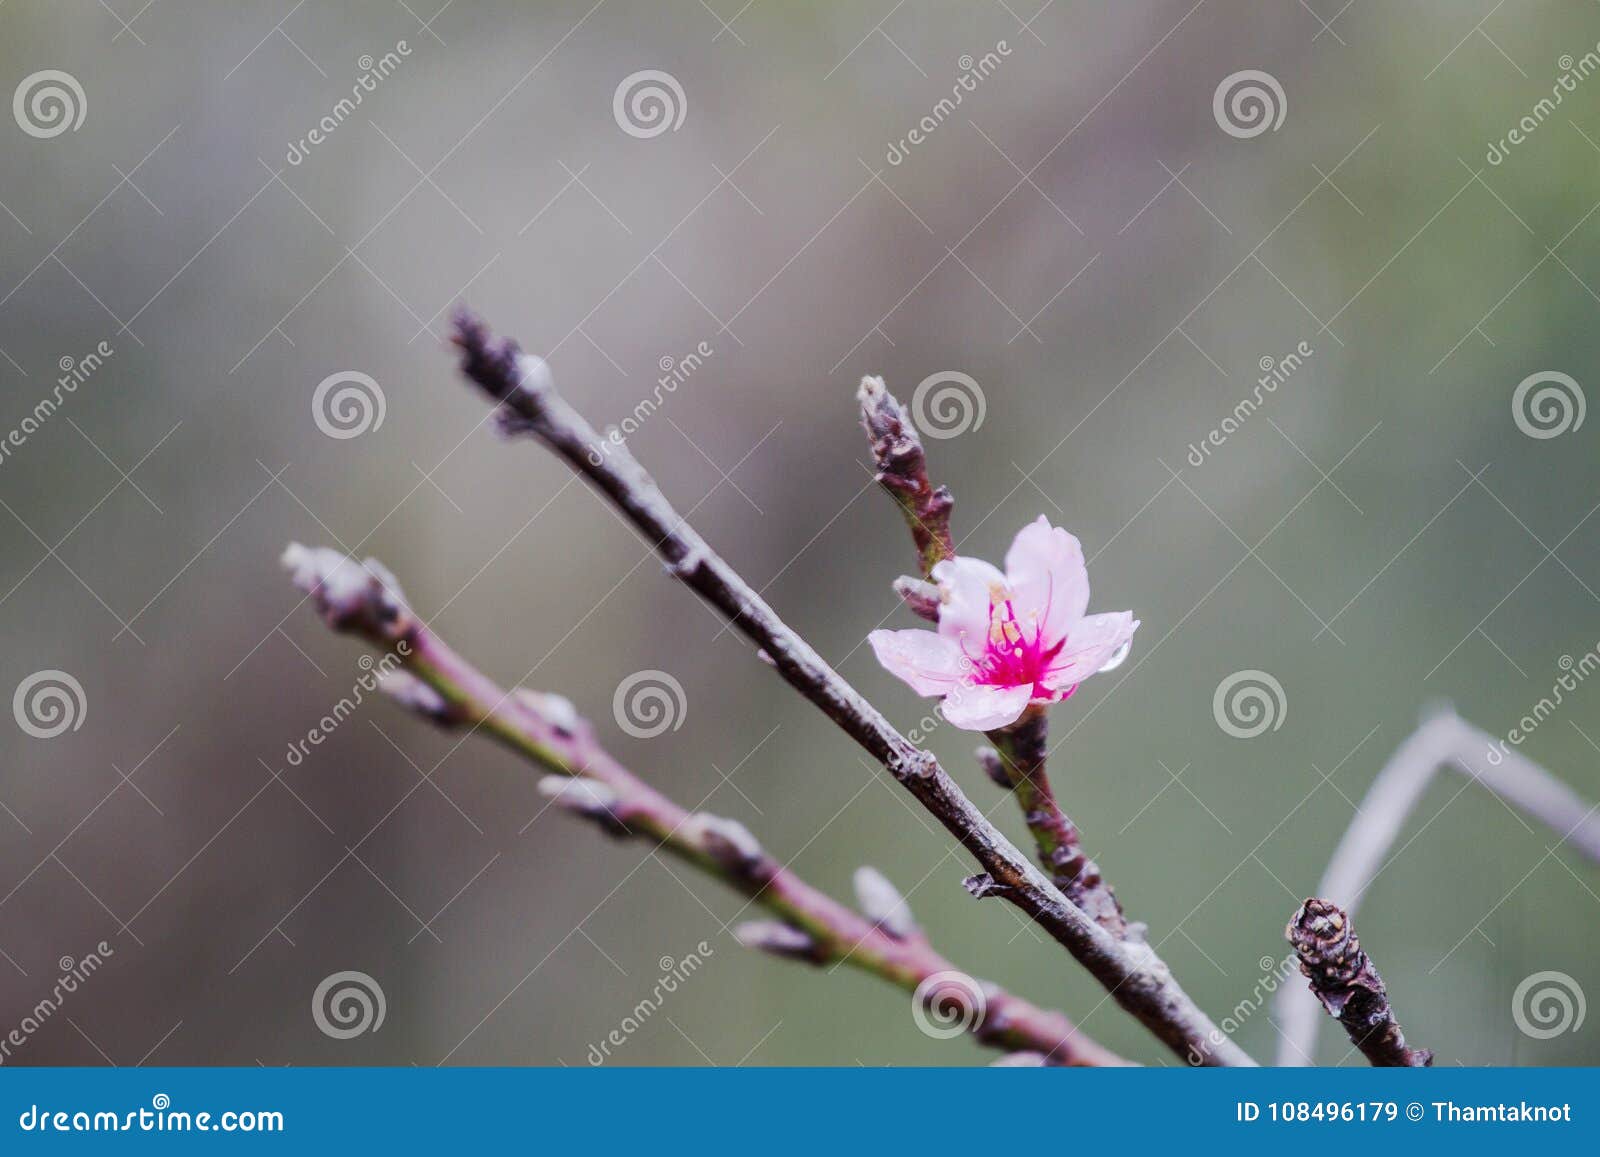 Κλείστε επάνω την άνθιση λουλουδιών Prunus cerasoides είναι πλήρης του κρύου βουνού ως υπόβαθρο. Το Prunus cerasoides, όταν έρχεται ο χειμώνας, αυτό έχει ανθίσει στο υπόβαθρο λουλουδιών